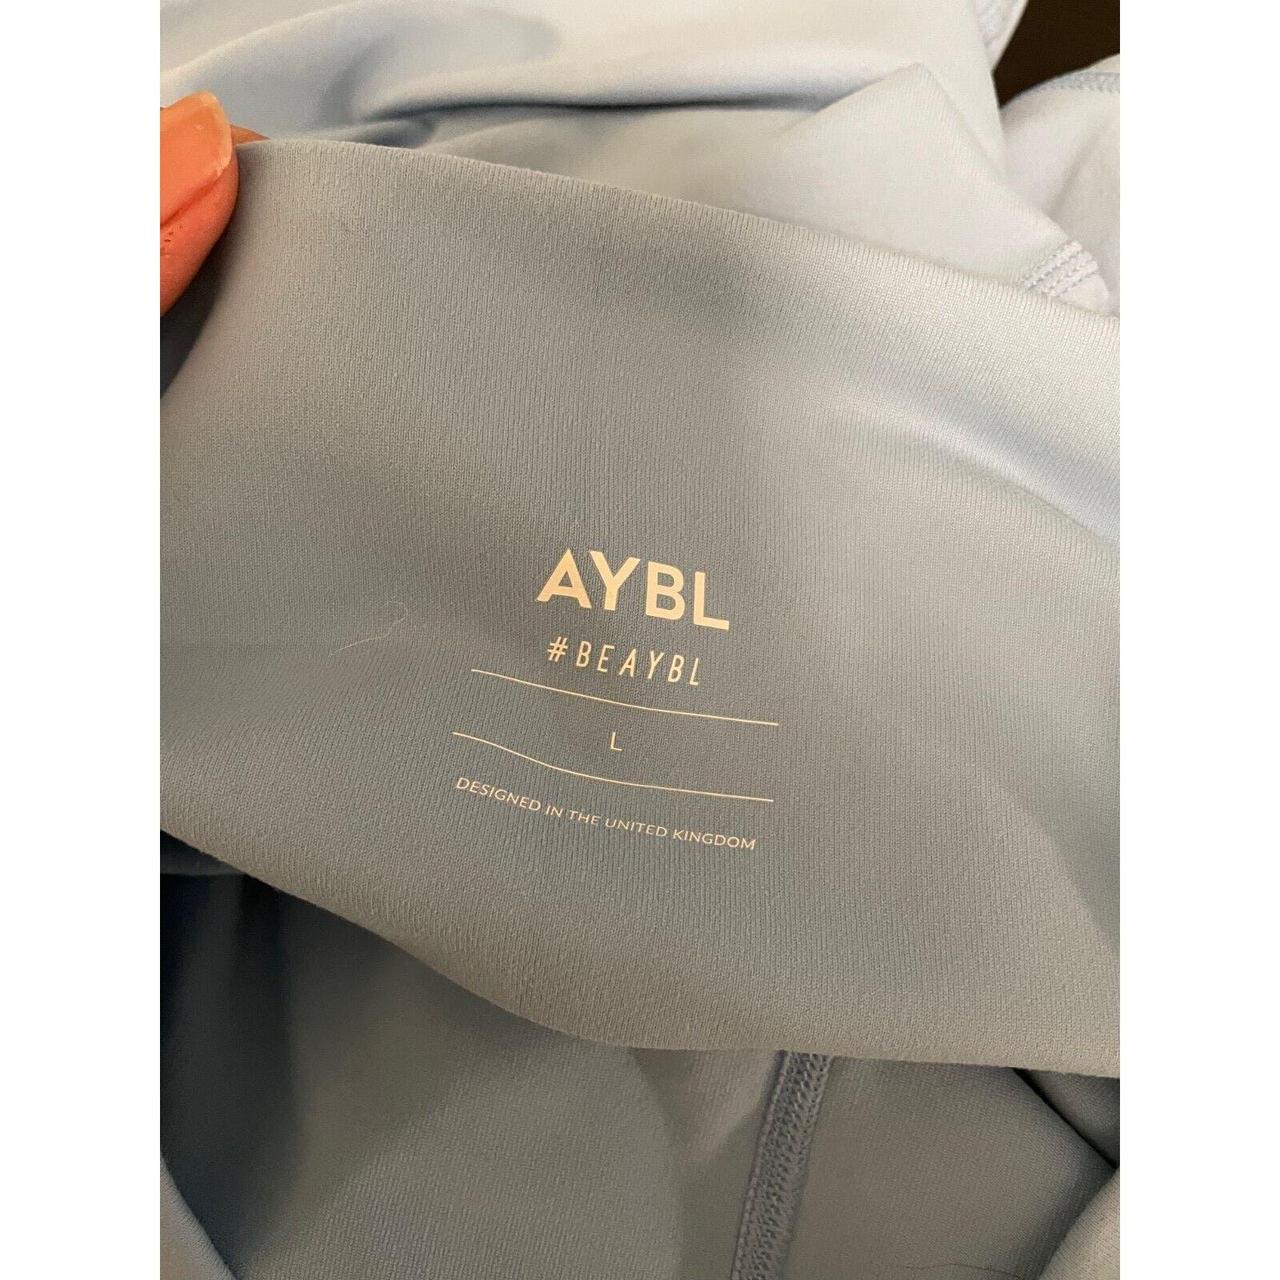 Aybl core leggings Beaybl Placid blue - Depop